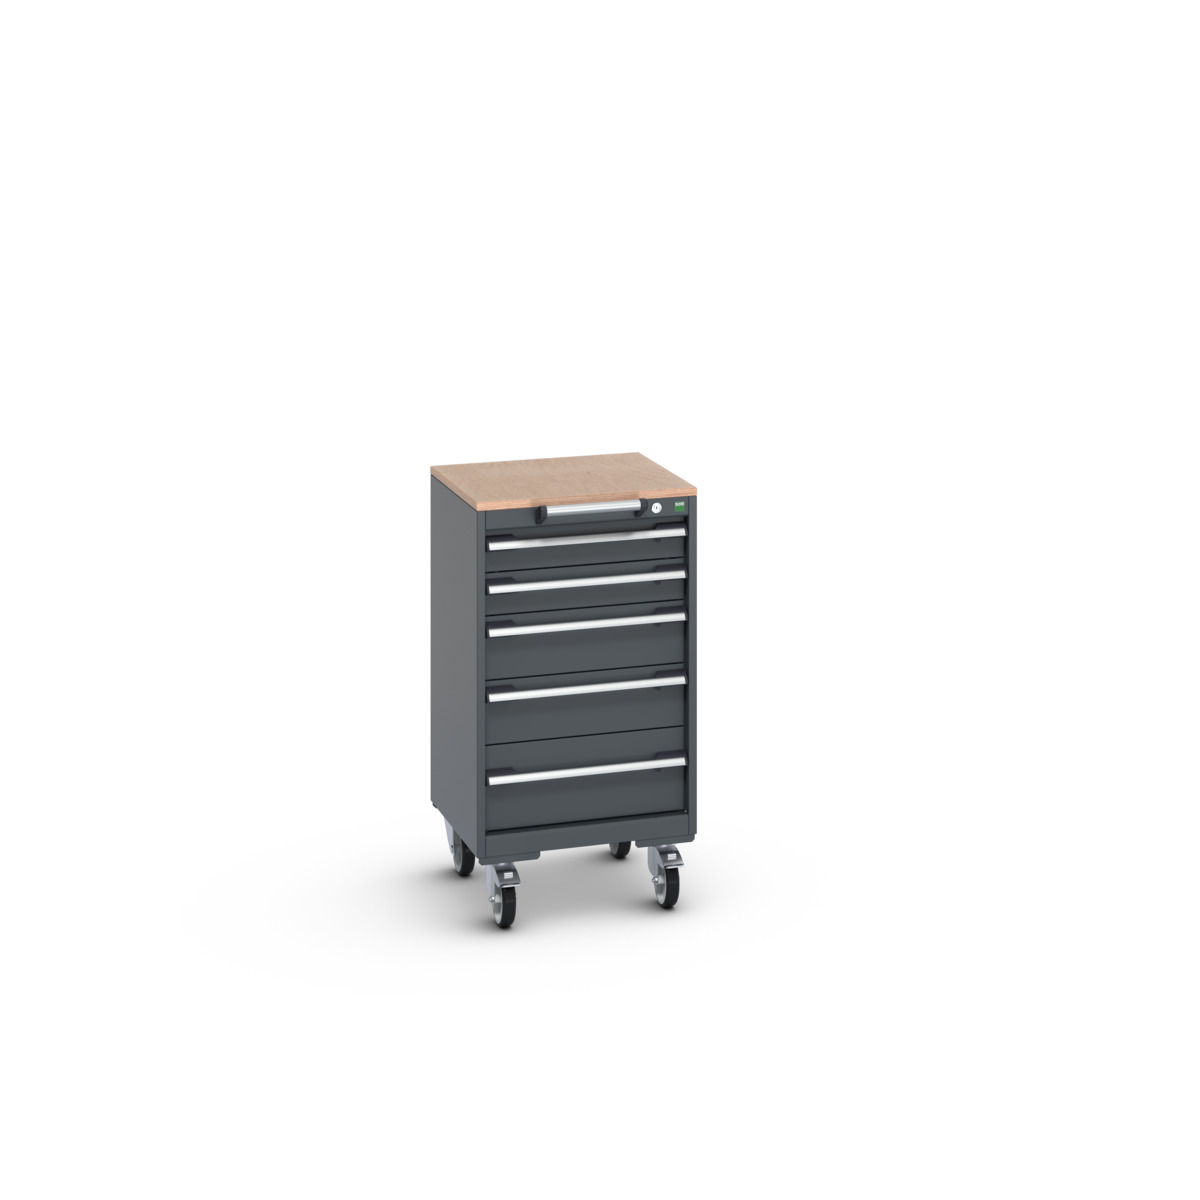 40402139.77V - cubio mobile cabinet